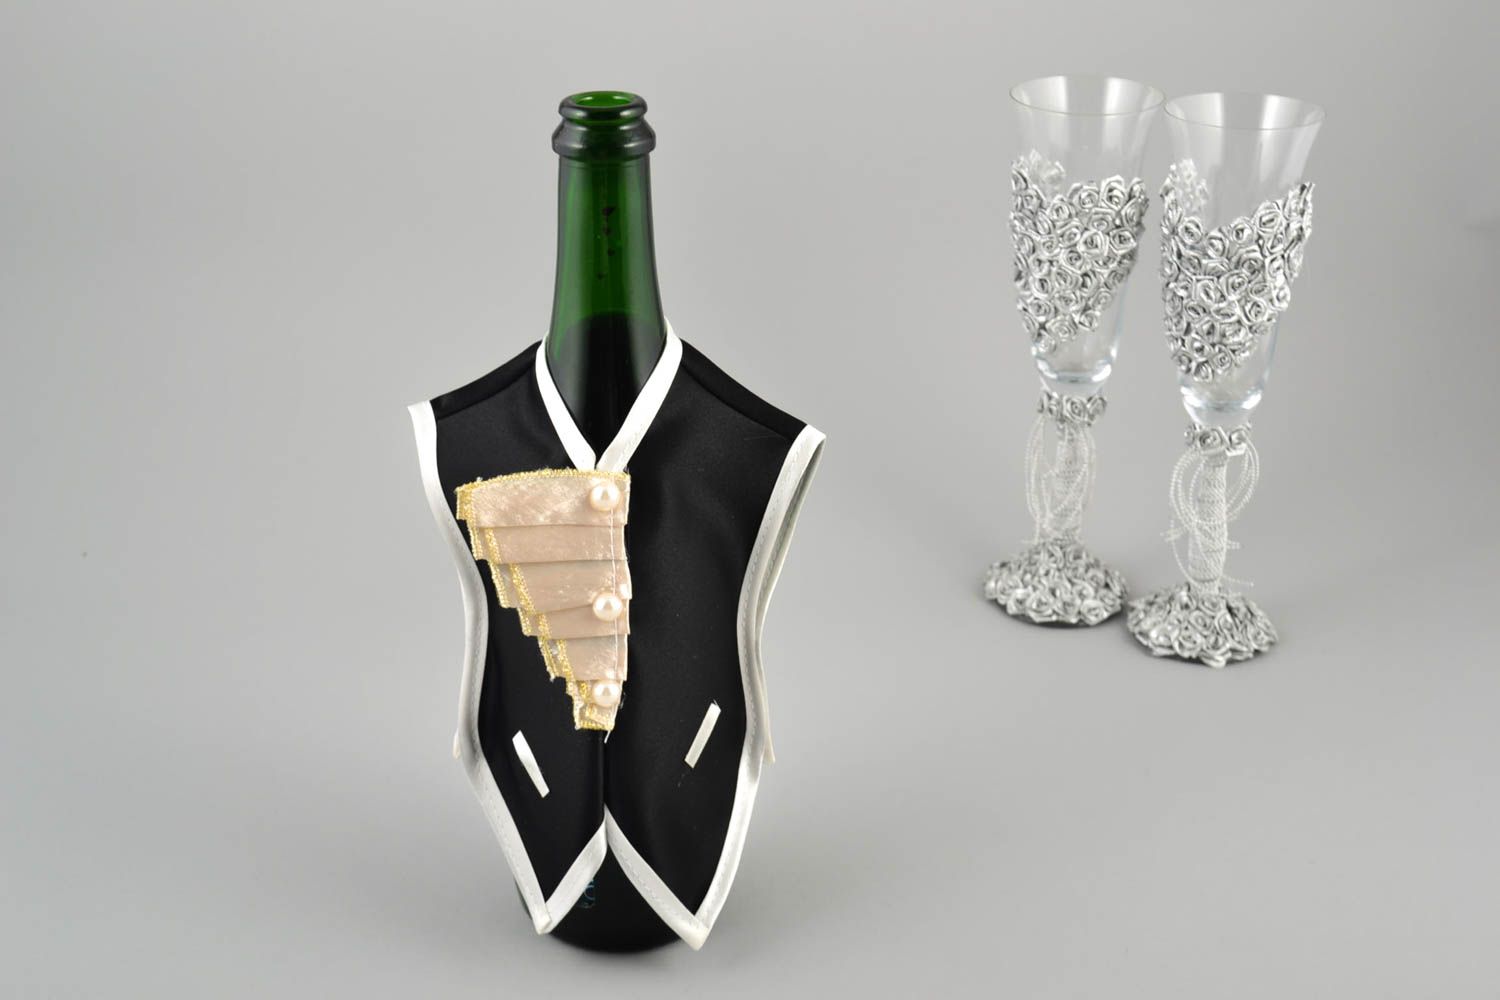 Deko Hochzeitstisch handgemachte Flaschen Deko tolle kreative Deko Ideen foto 1